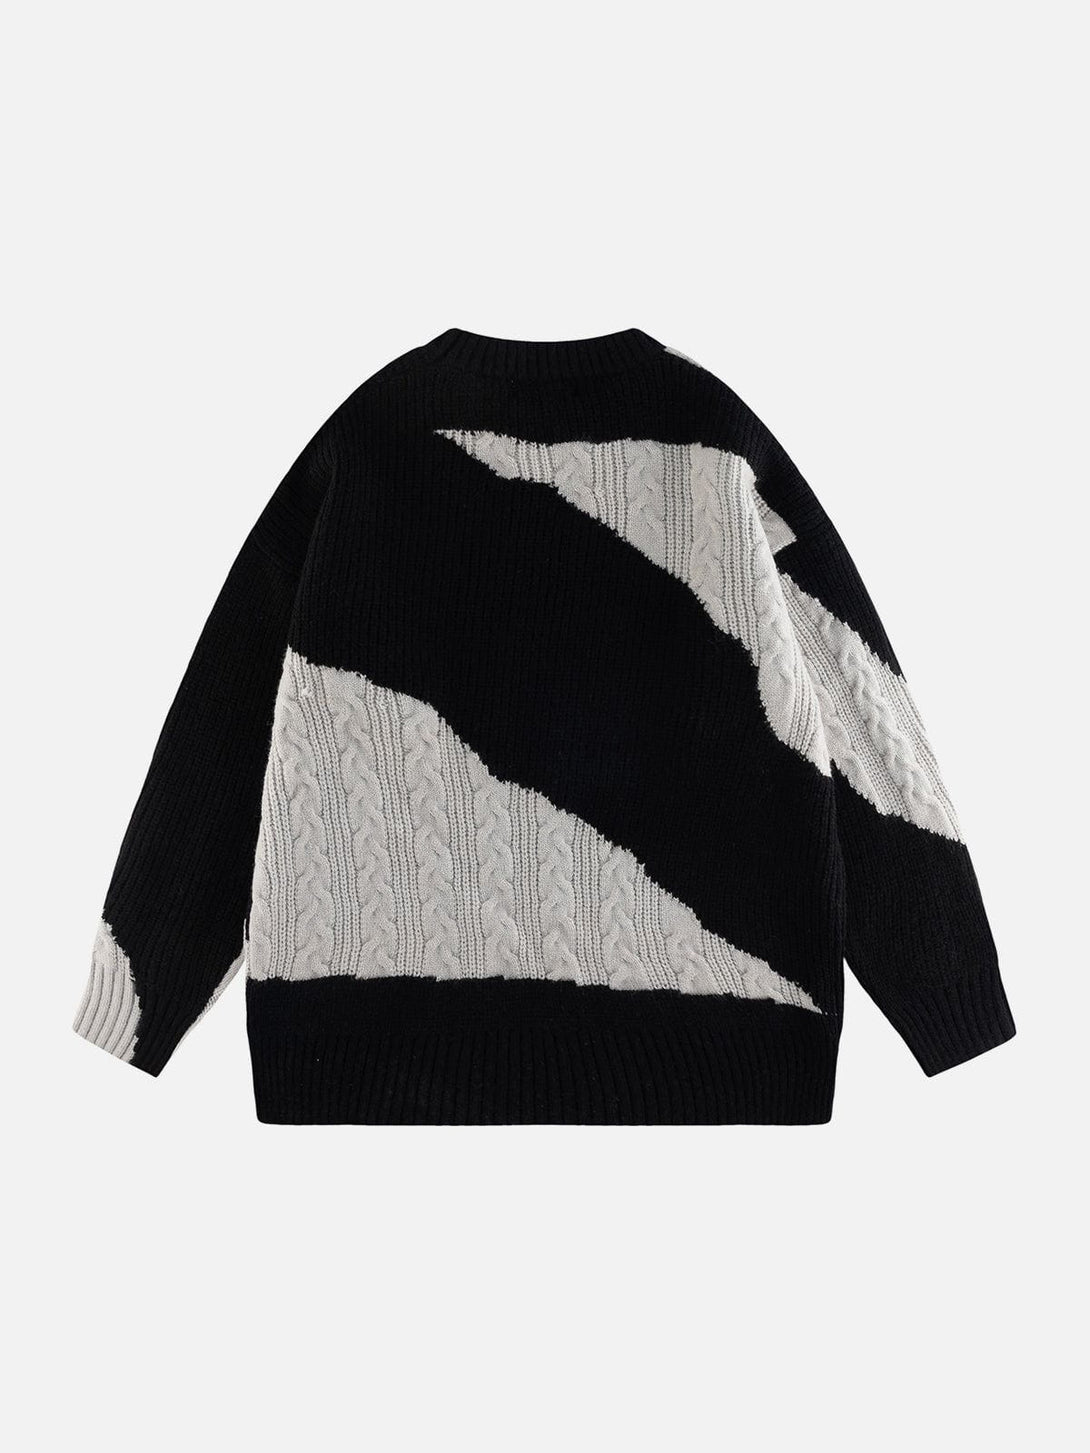 AlanBalen® - Contrast Irregular Design Knit Sweater AlanBalen